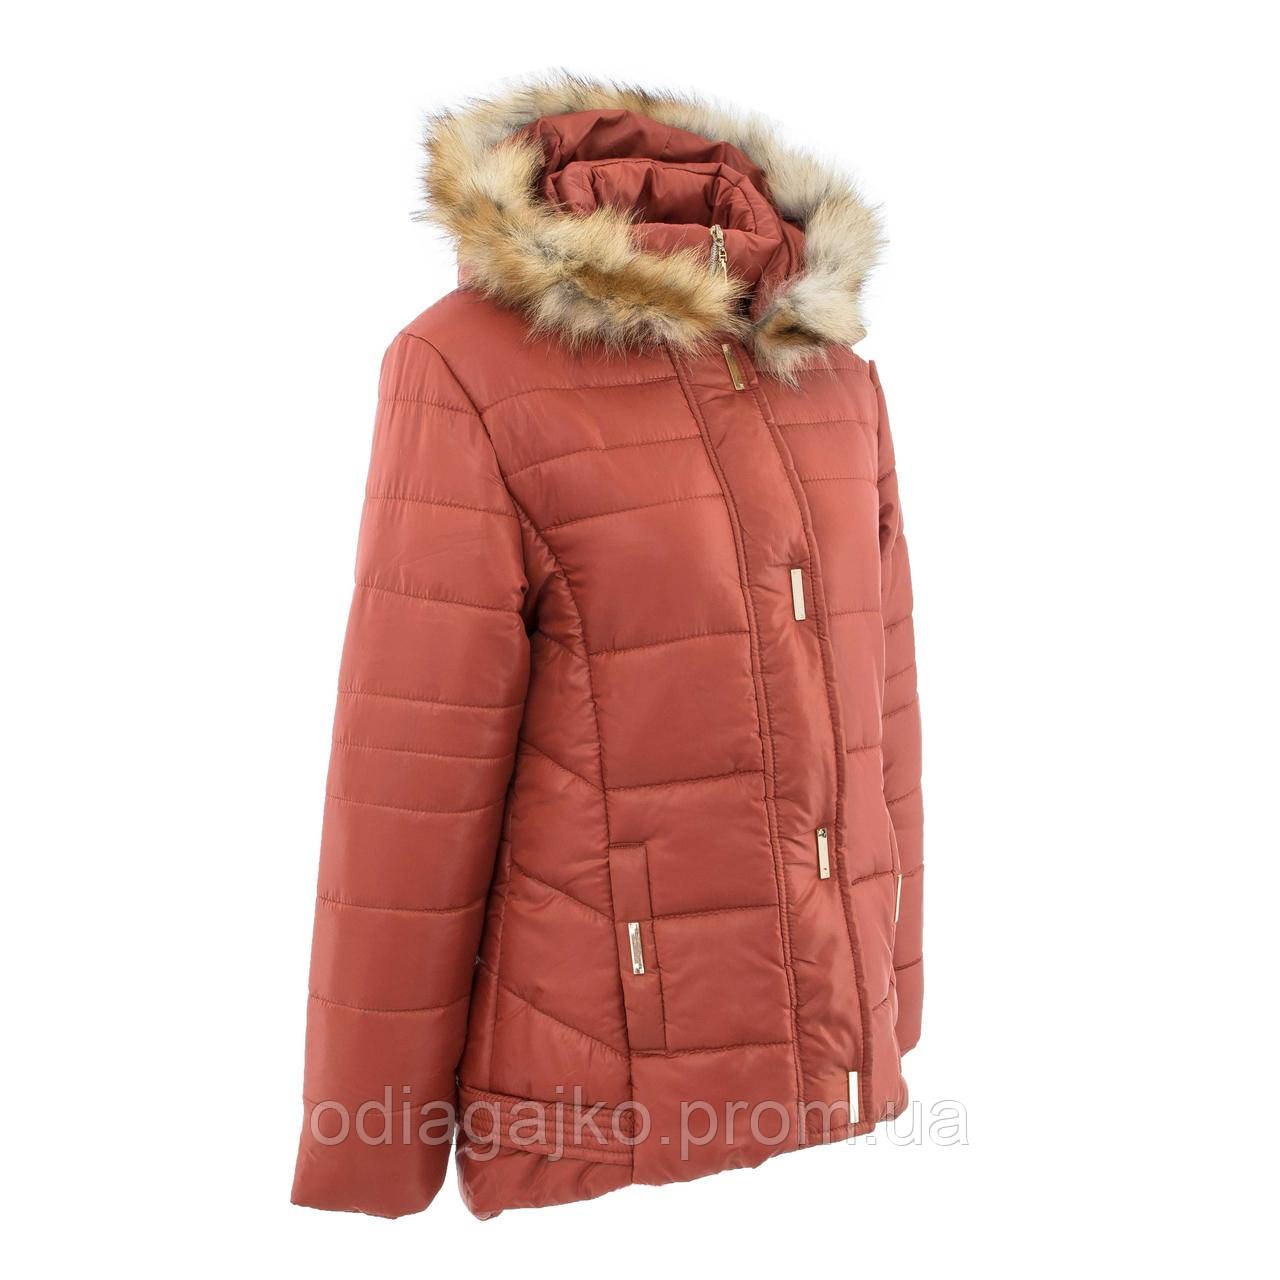 Куртка дитяча для дівчинки зима Женєва ТЕРРАКОТ 146,152,158,164 см подовжена ззаду натуральне хутро